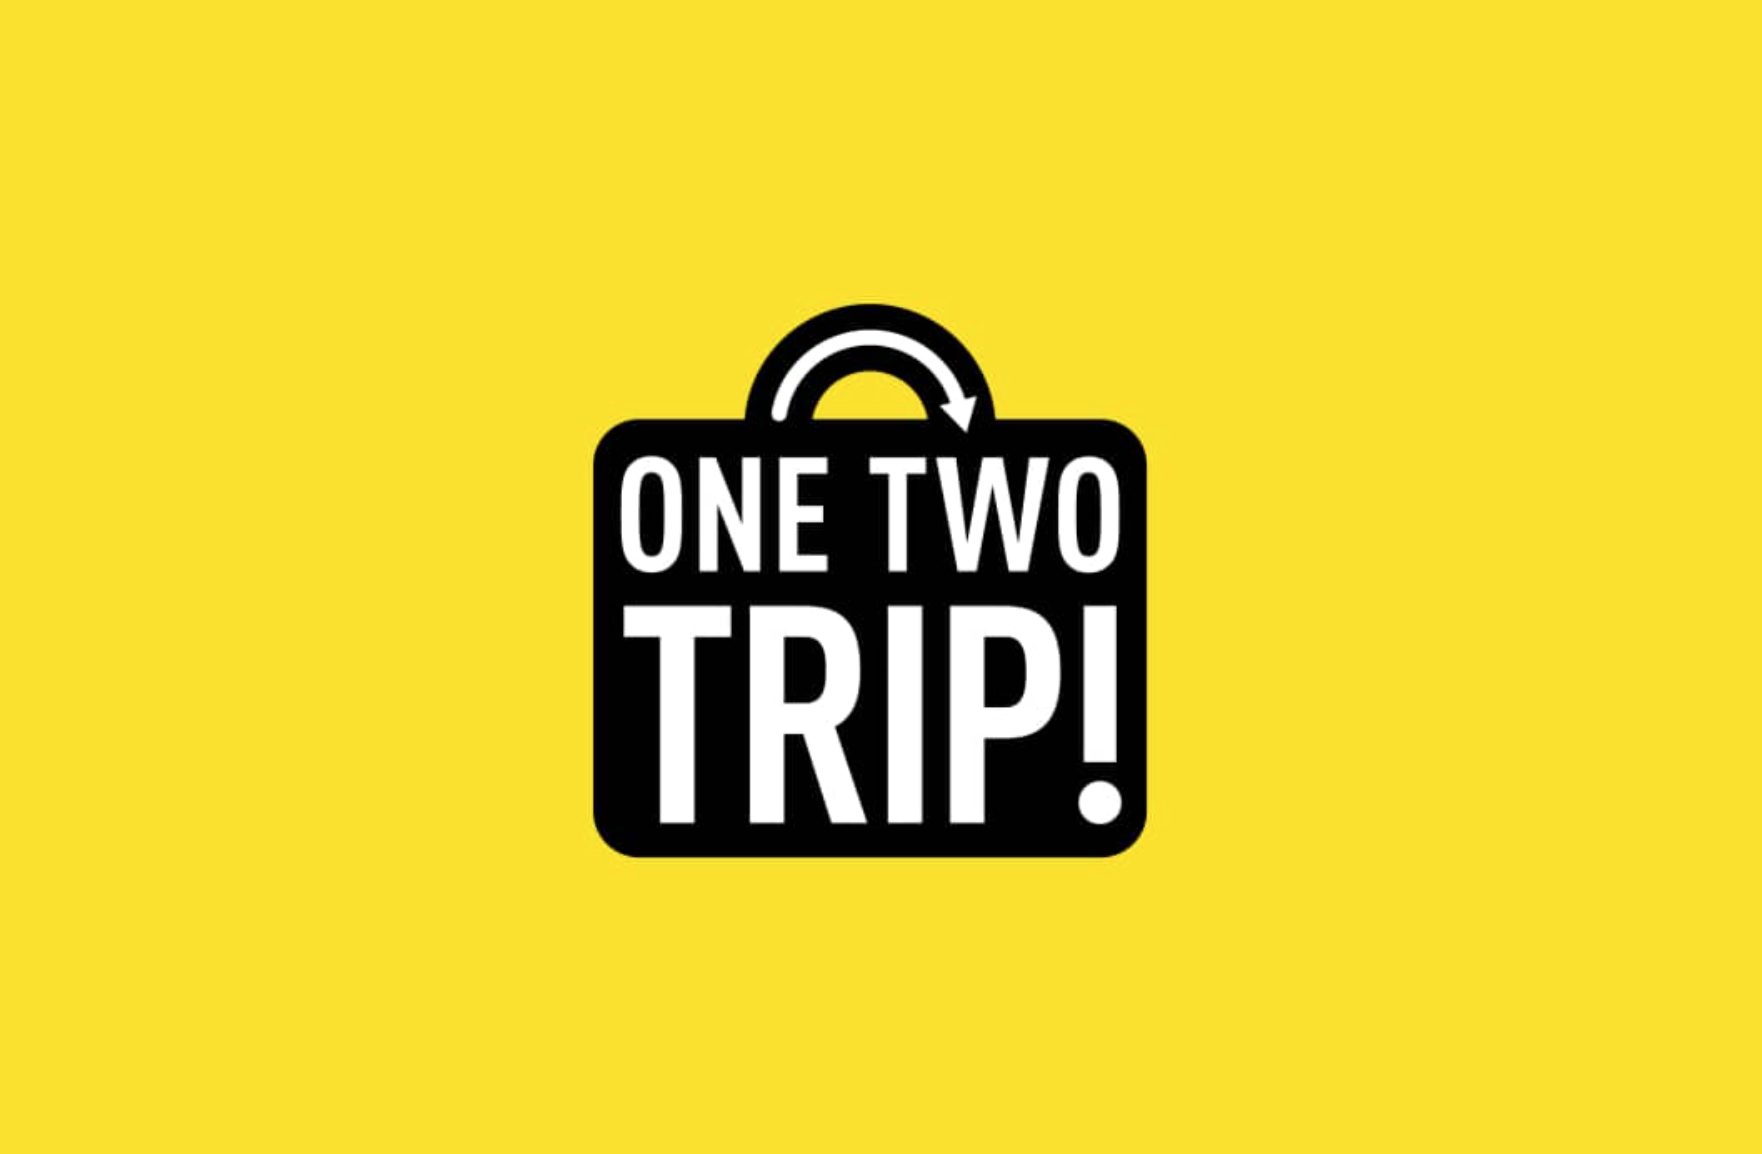 Оне тво трип. ONETWOTRIP лого. One two trip. Оnetotrip. ONETWOTRIP картинка.